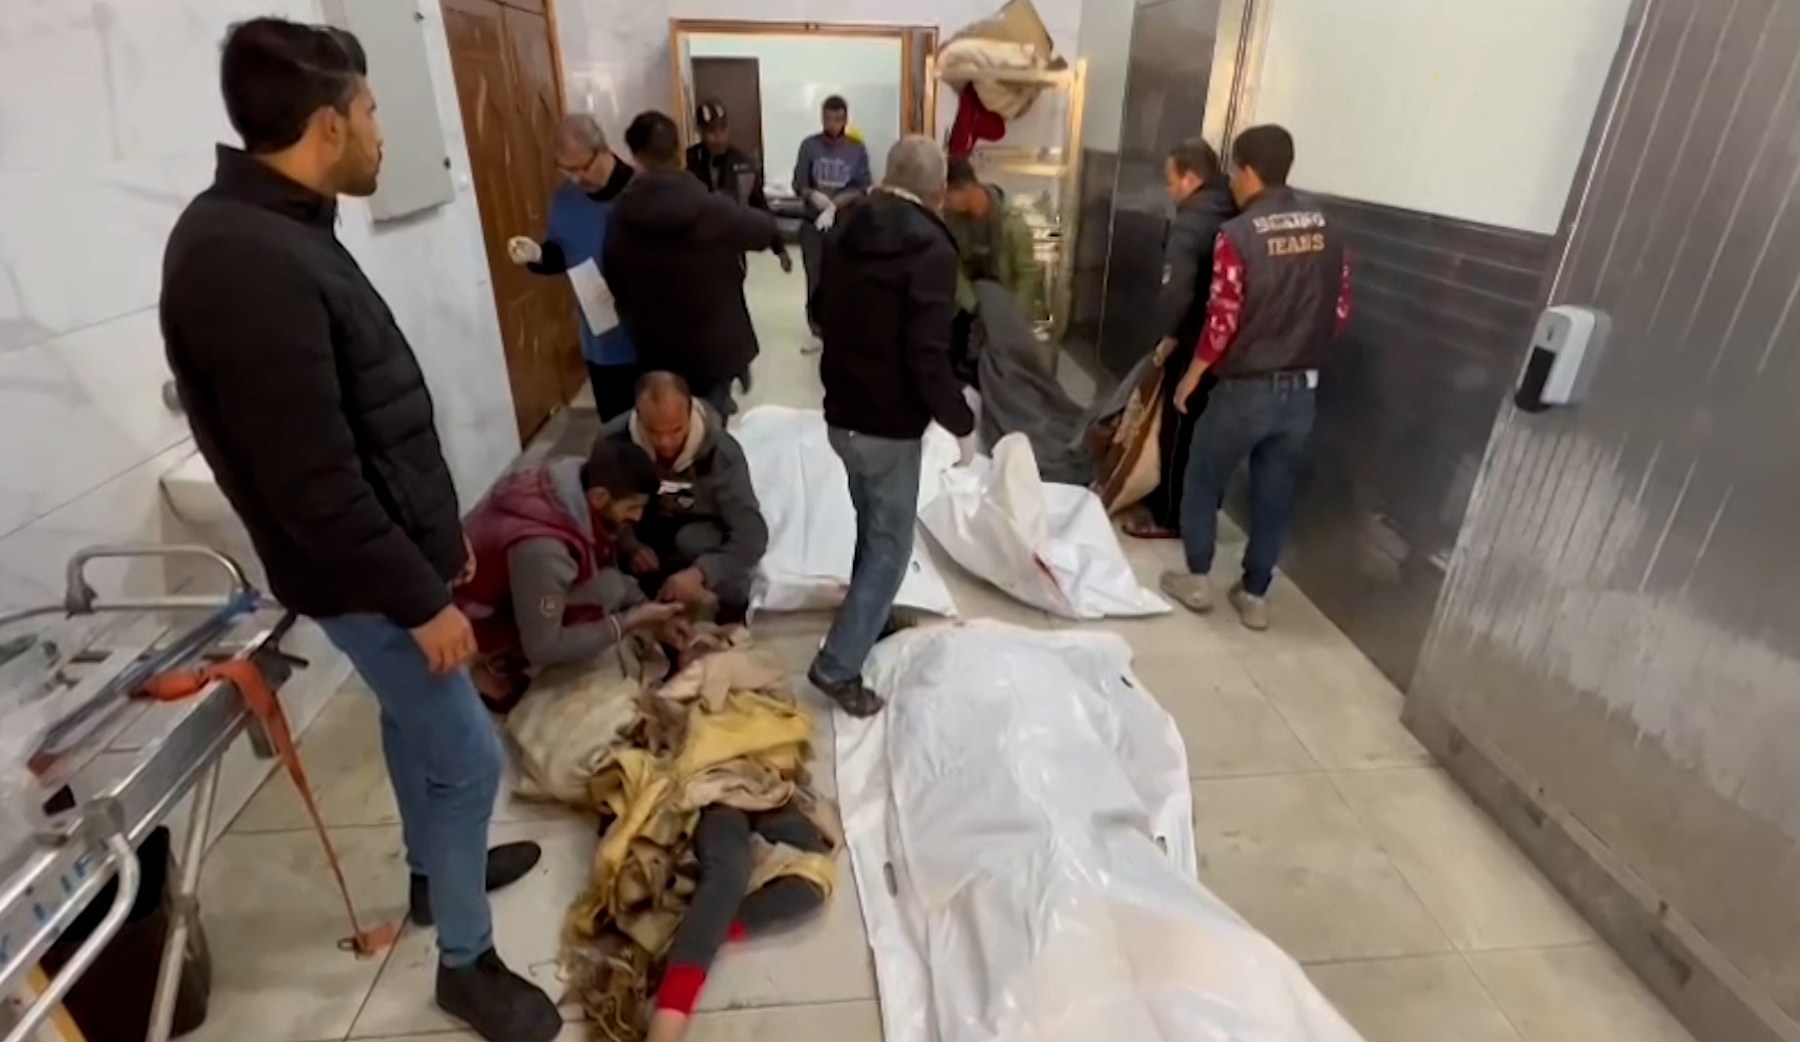 مستشفى ناصر يستقبل جثث شهداء سقطوا بقصف لحي الأمل بخان يونس | التقارير الإخبارية – البوكس نيوز